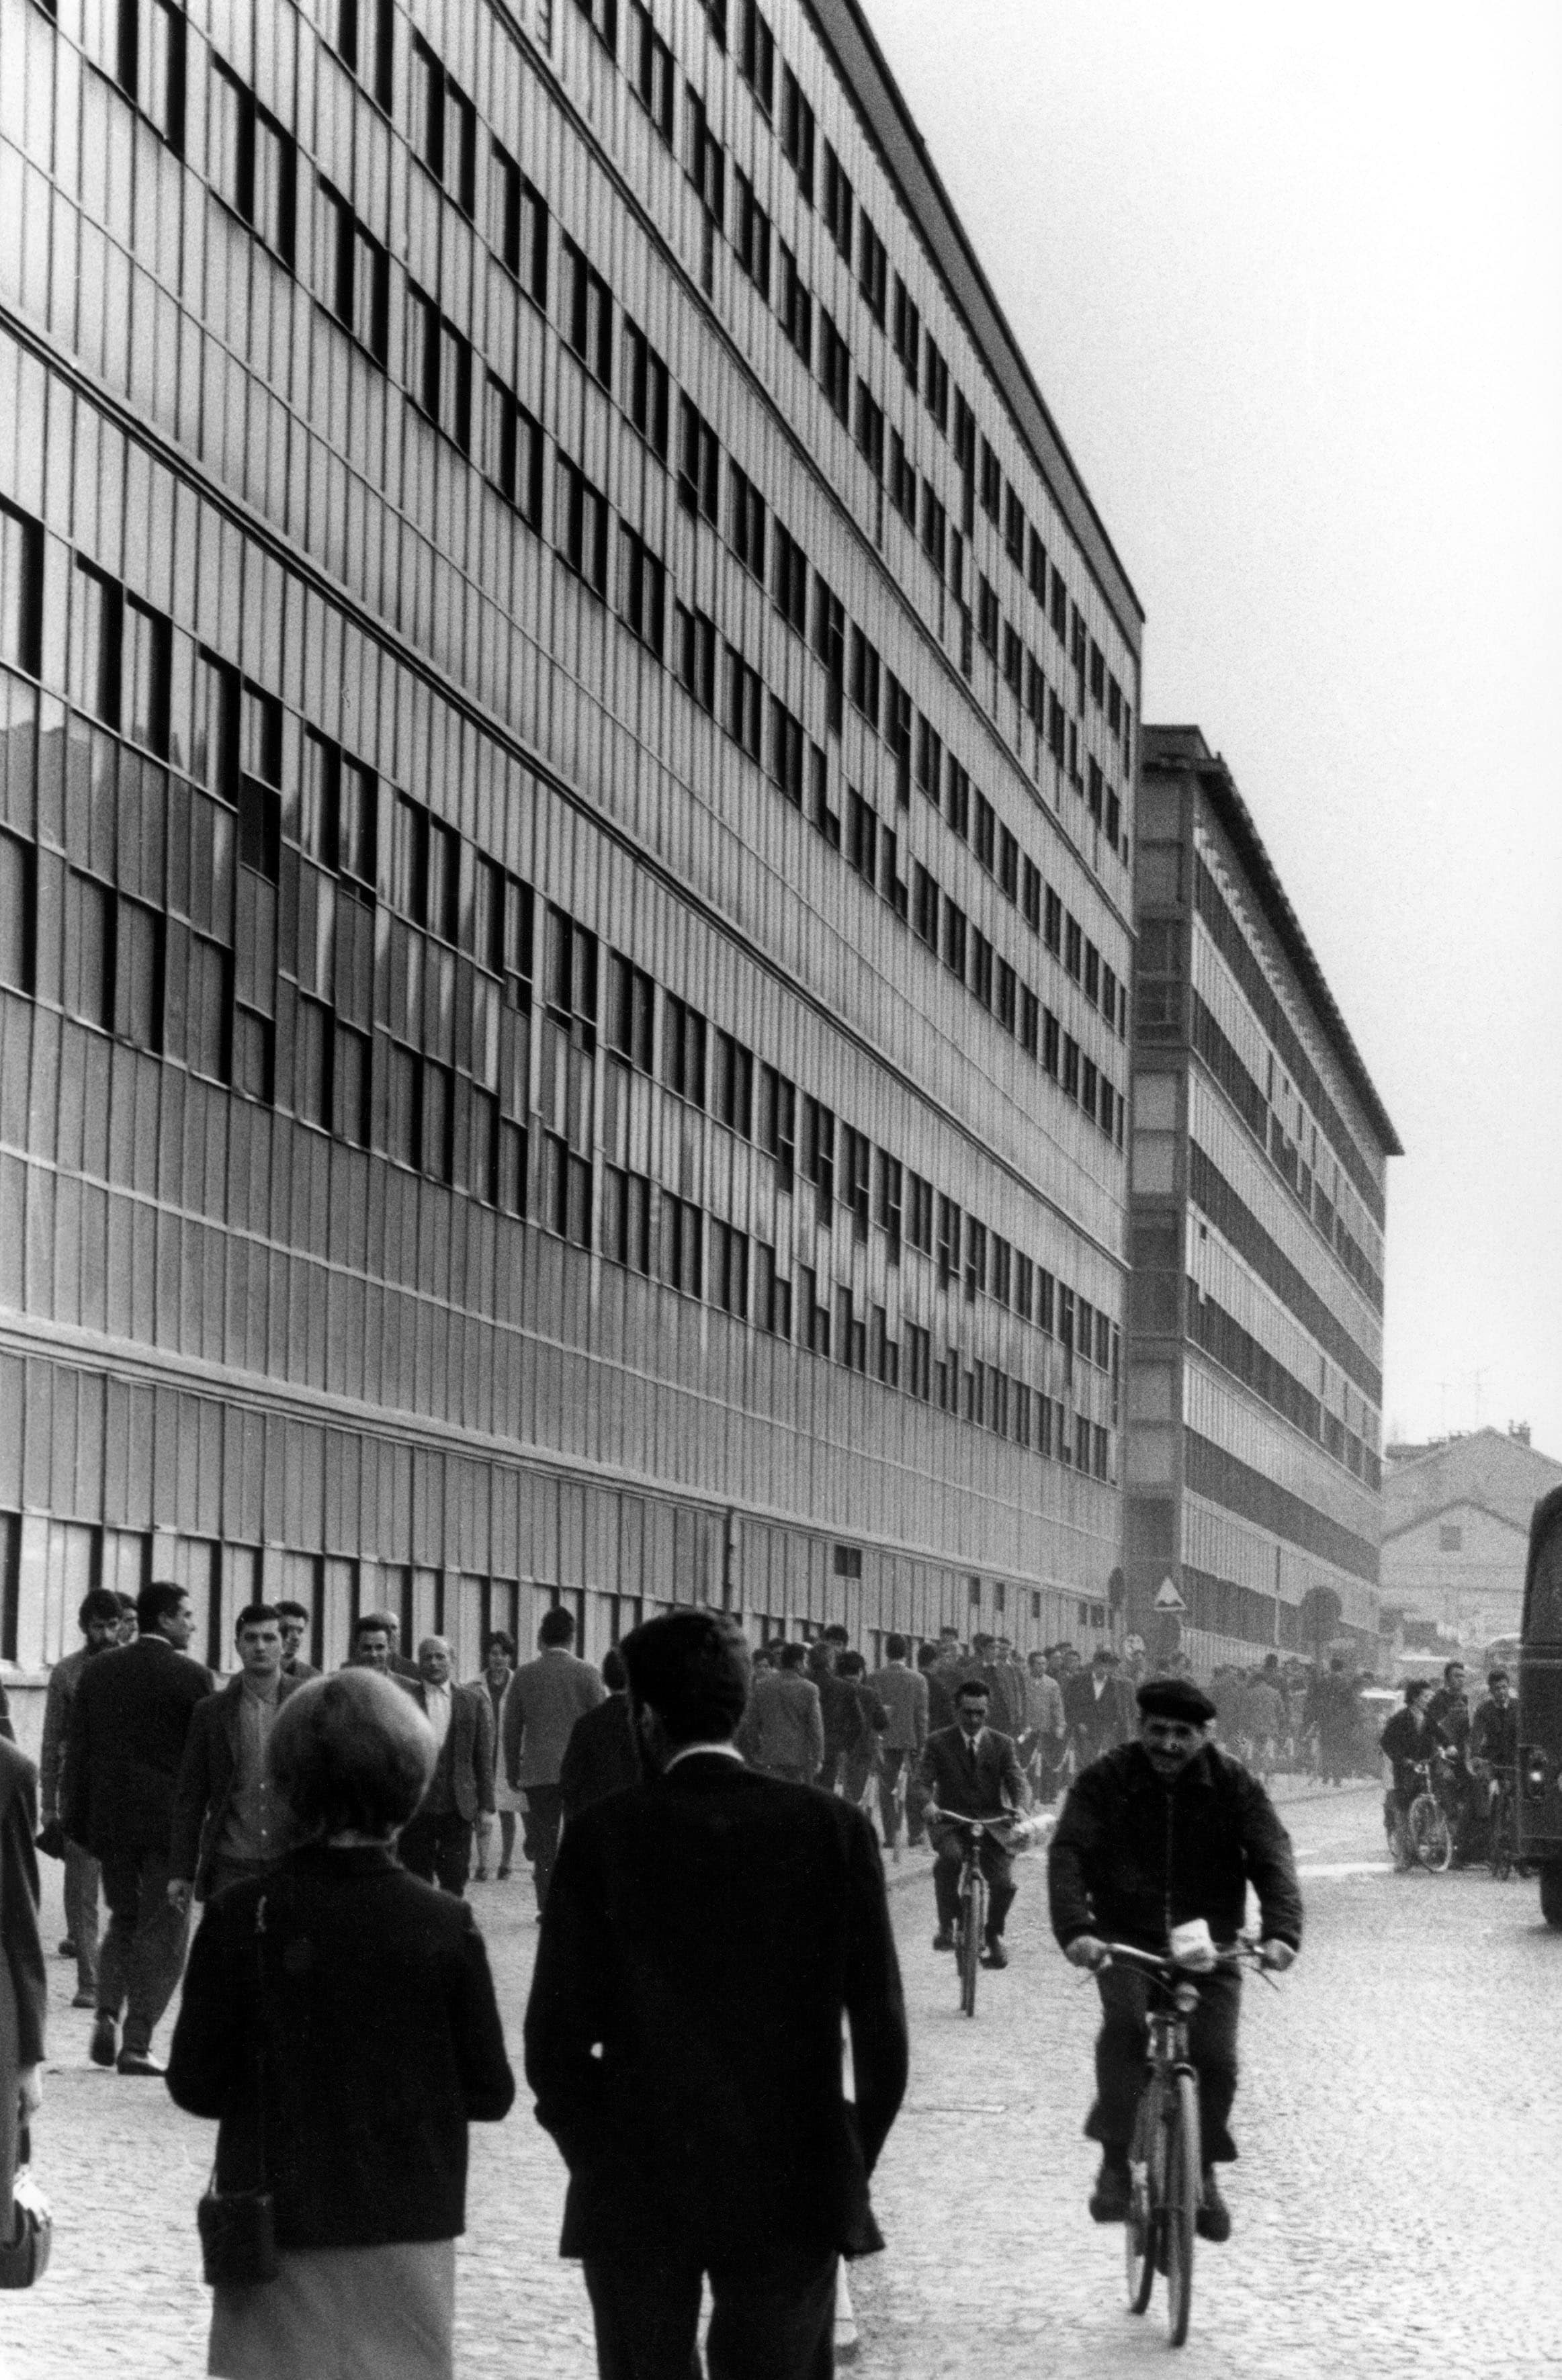 La società Olivetti nel 1965, si nota il palazzo dai caratteristici mattoni rossi